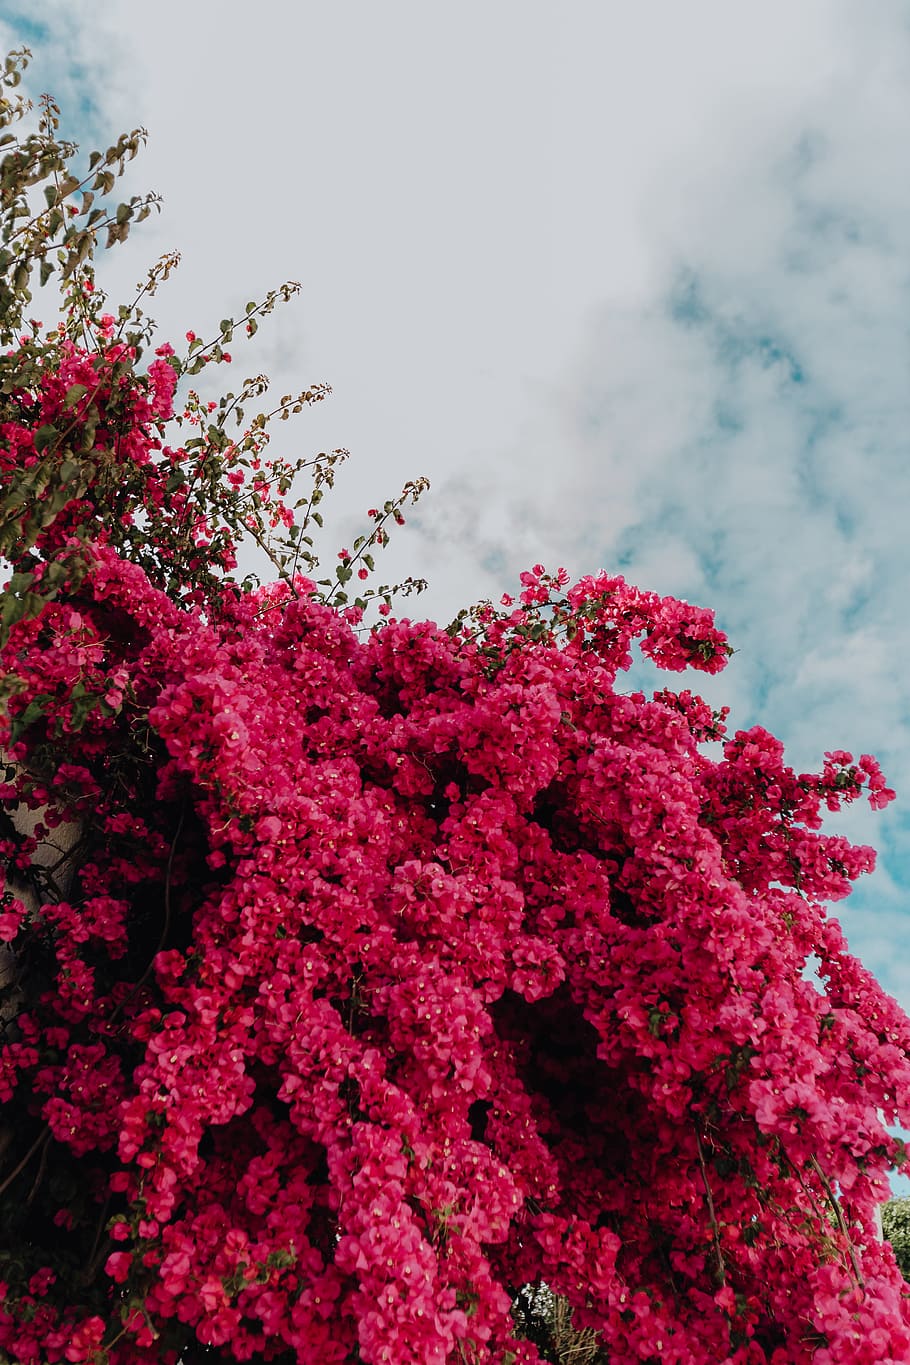 Hình nền HD với hoa bougainvillea màu hồng chống lại kiến trúc hiện đại là sự kết hợp độc đáo và đẹp mắt. Những hình ảnh này sẽ trở nên sống động và hấp dẫn hơn khi bạn sử dụng cho máy tính. Hãy đưa cuộc sống của bạn đến một cấp độ mới với những hình nền HD này.